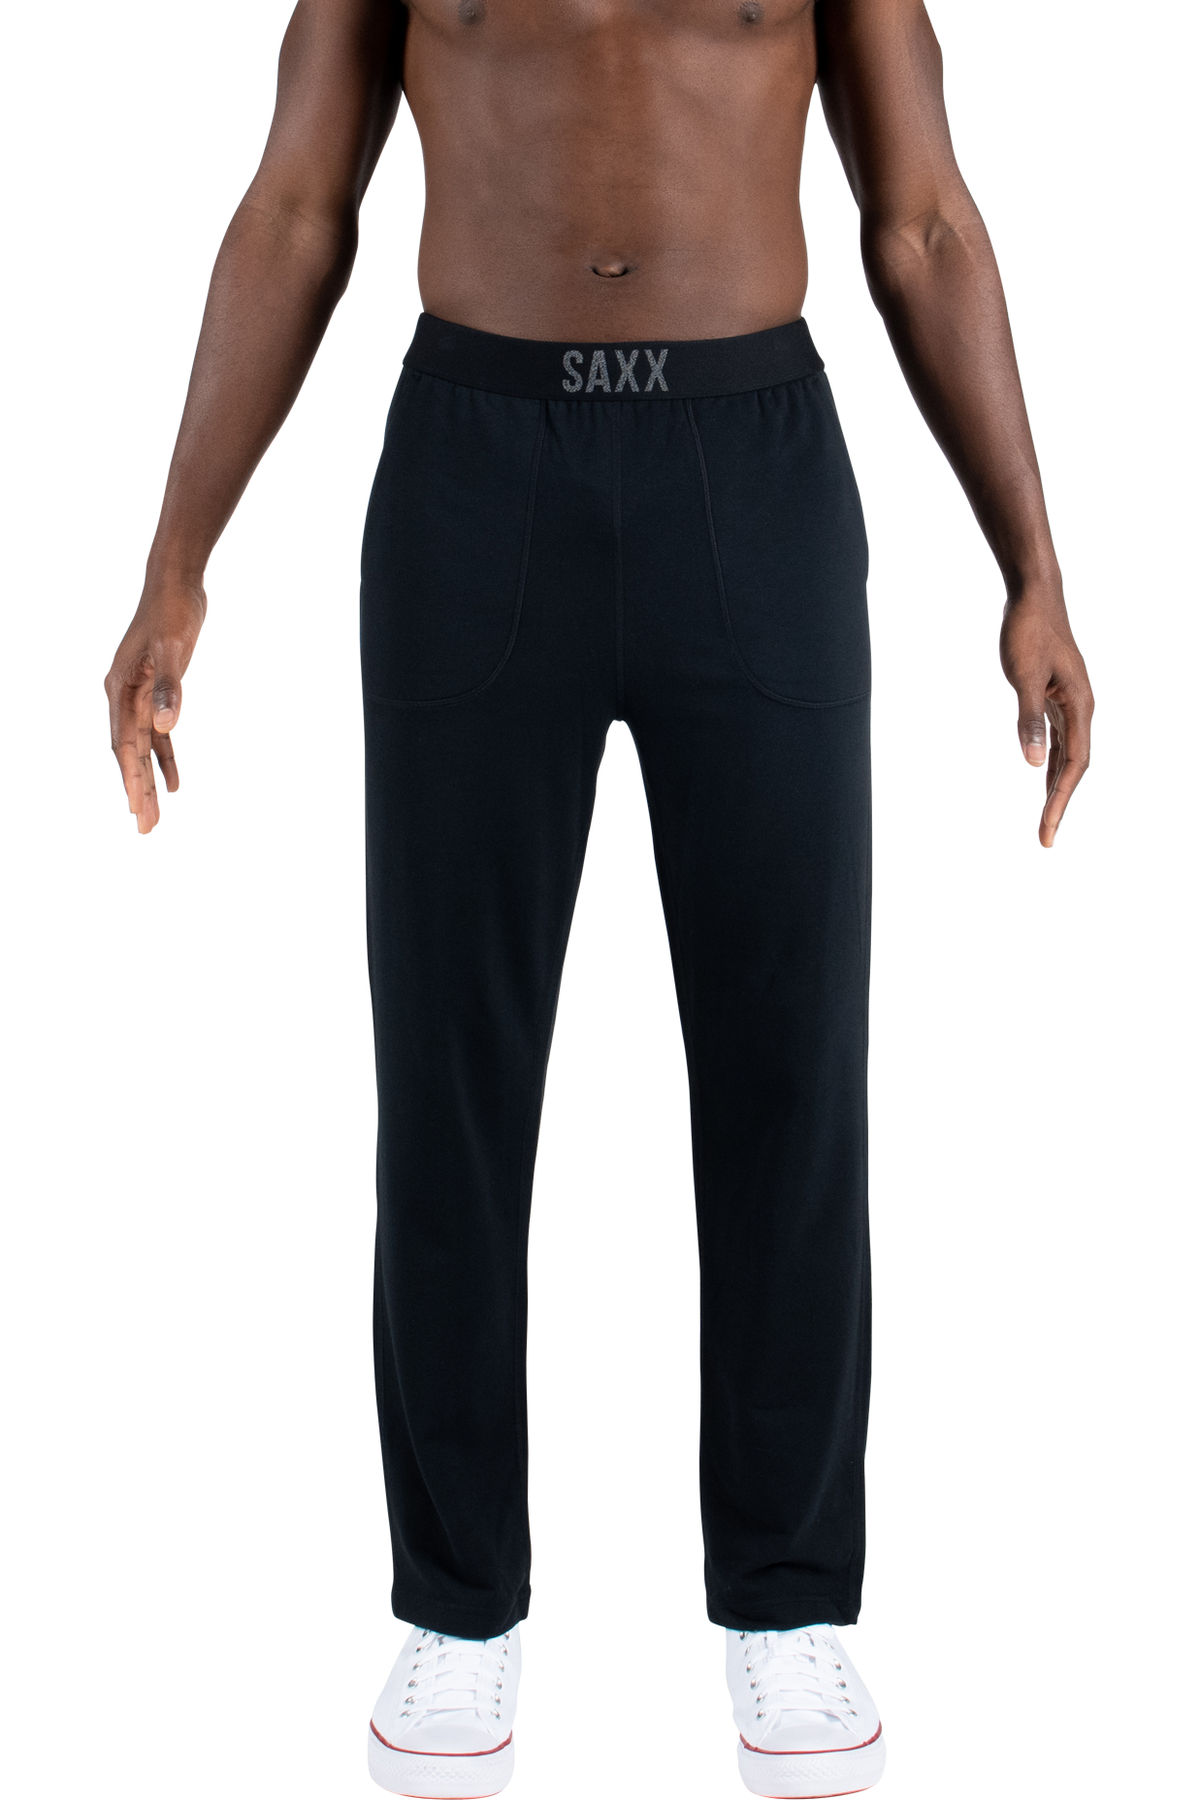 Saxx 3Six Five Lounge Pant - Style SXLP37B-BLK, front